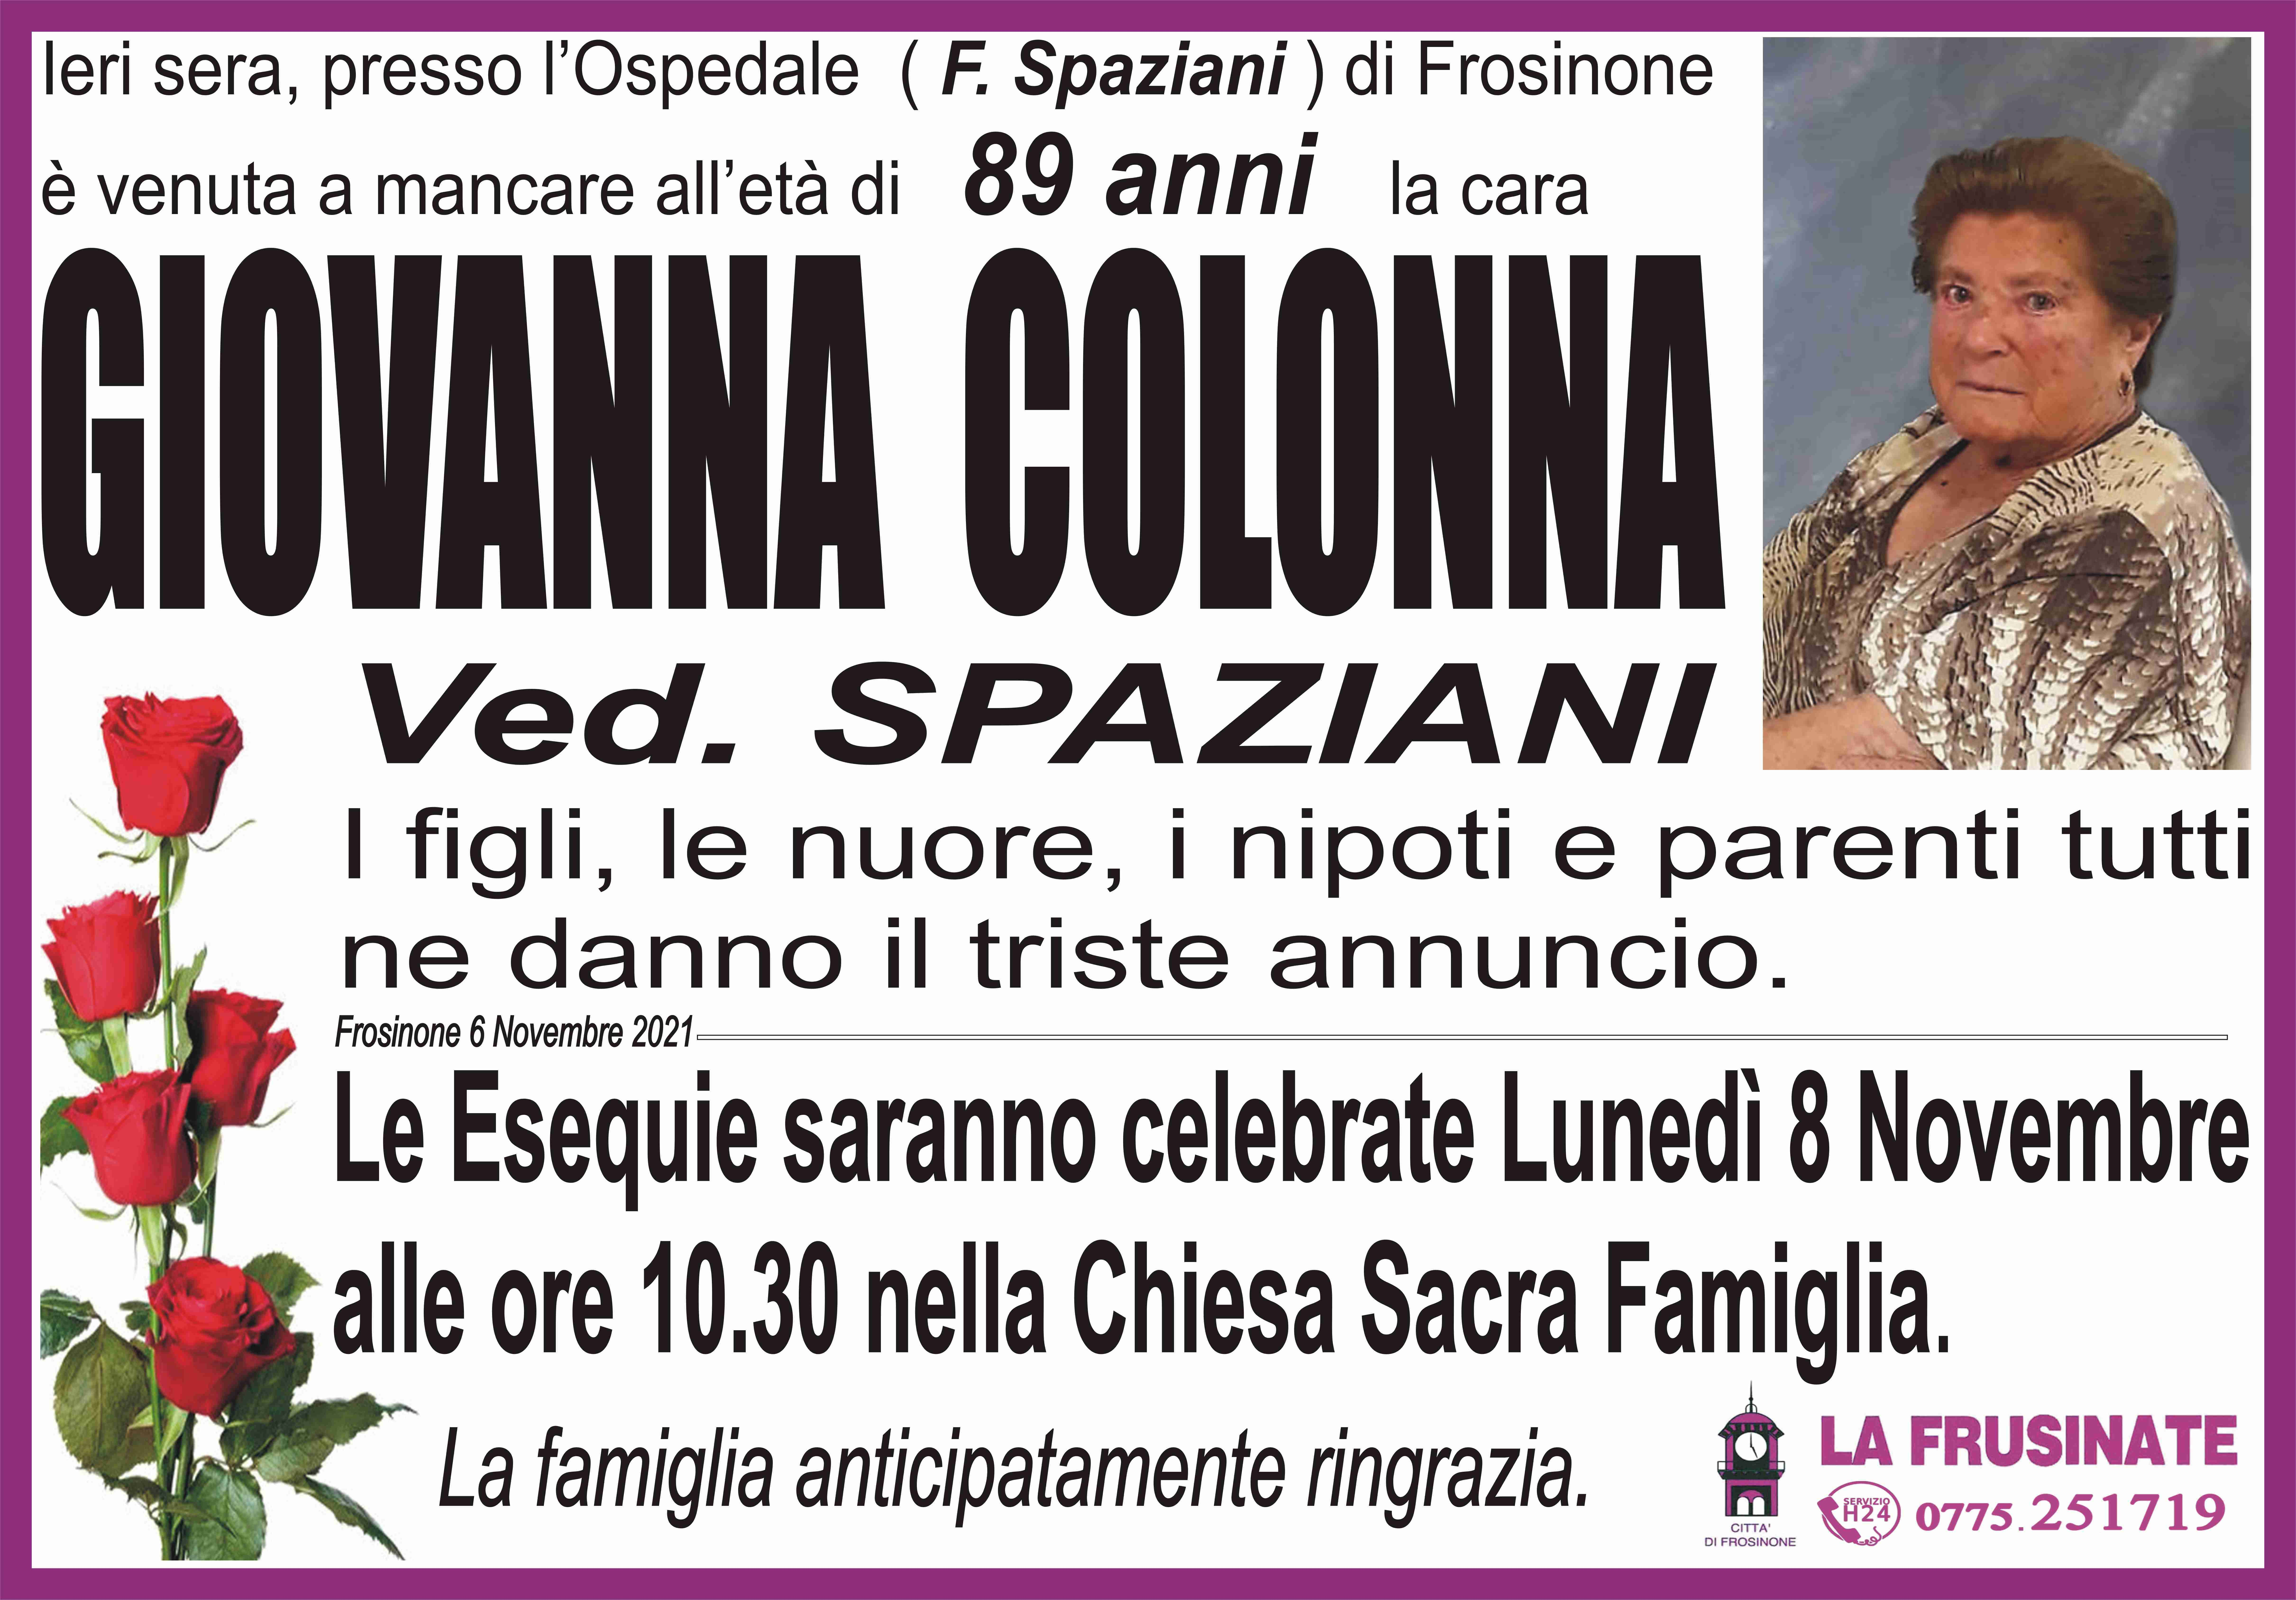 Giovanna Colonna